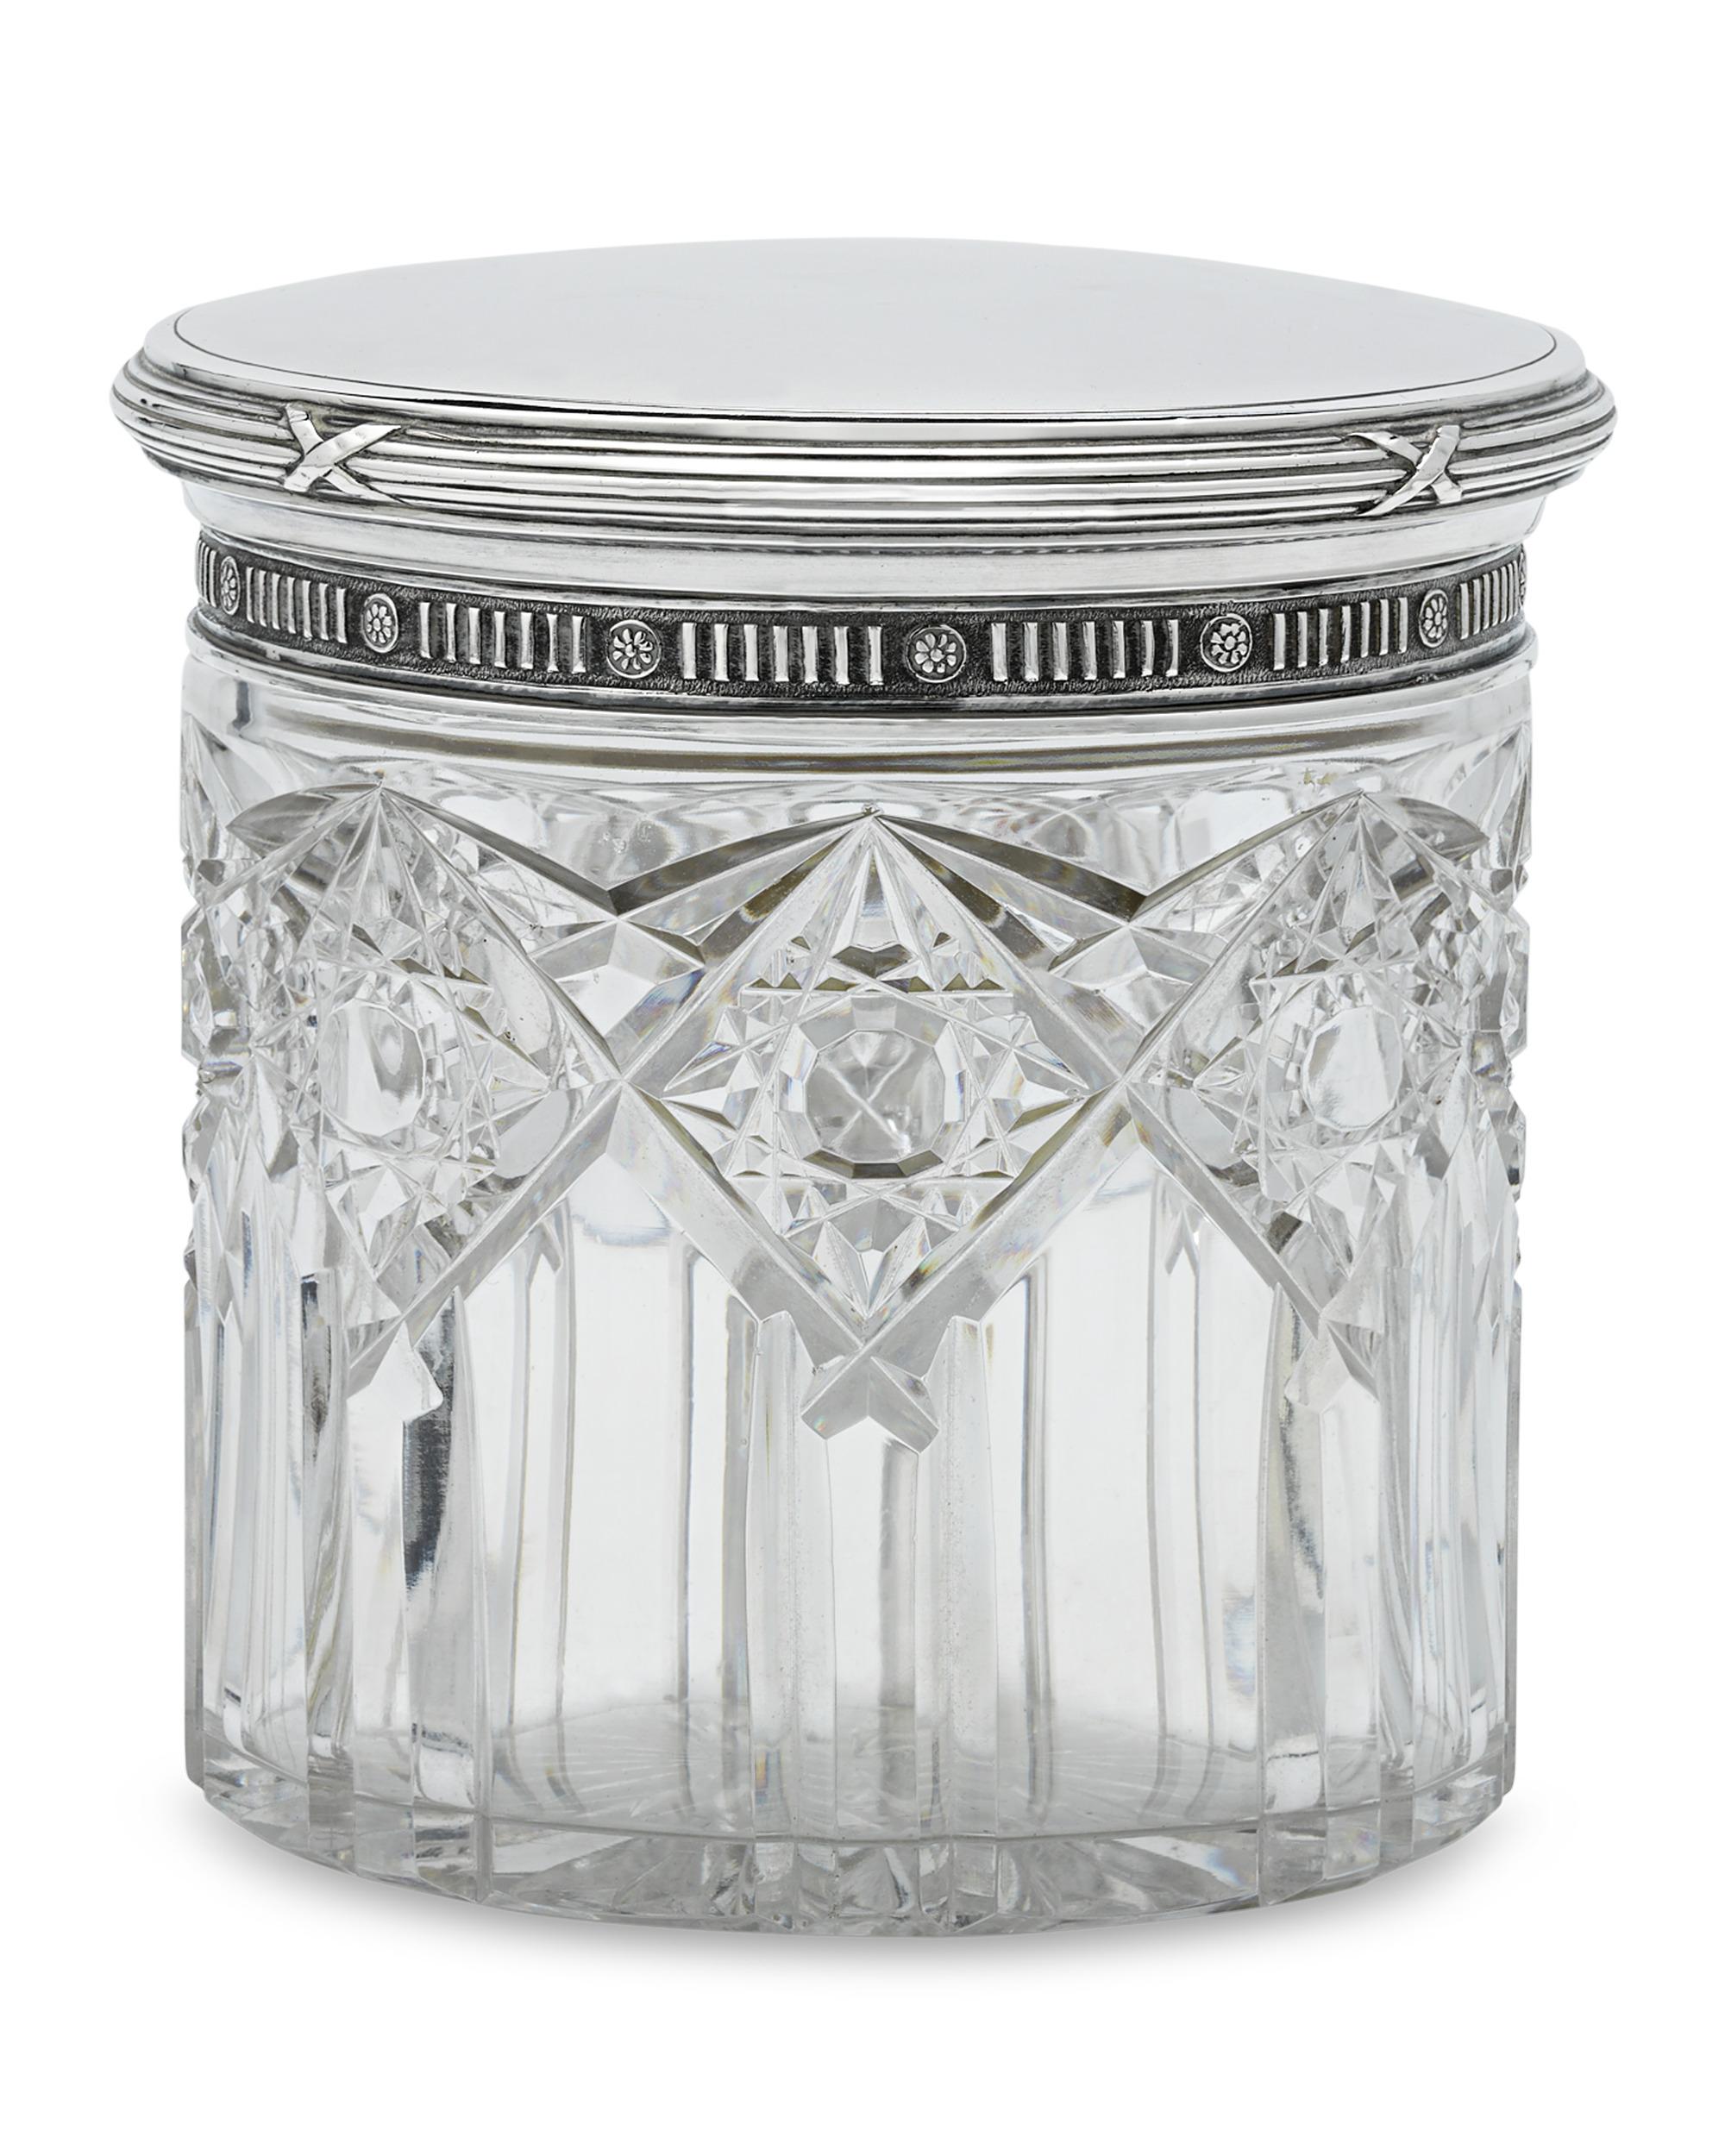 Dieses seltene, in Silber gefasste Toilettenkästchen aus geschliffenem Glas wurde vom legendären russischen Juwelier und Kunsthandwerker Peter Carl Fabergé gefertigt. Die runde, geschliffene Glasbox weist ein Prismenmuster und geometrische